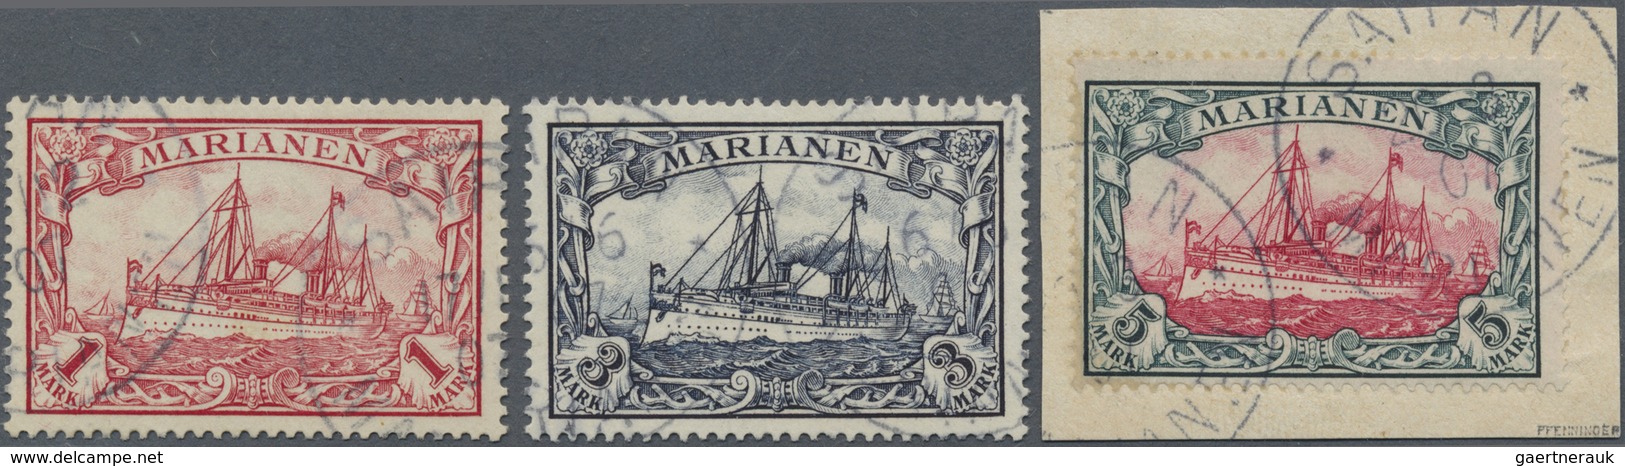 Brfst/O Deutsche Kolonien - Marianen: 1901. Schiffstype 5 Mark Auf Briefstück, Signiert Pfenninger, Dazu 3 M - Mariannes